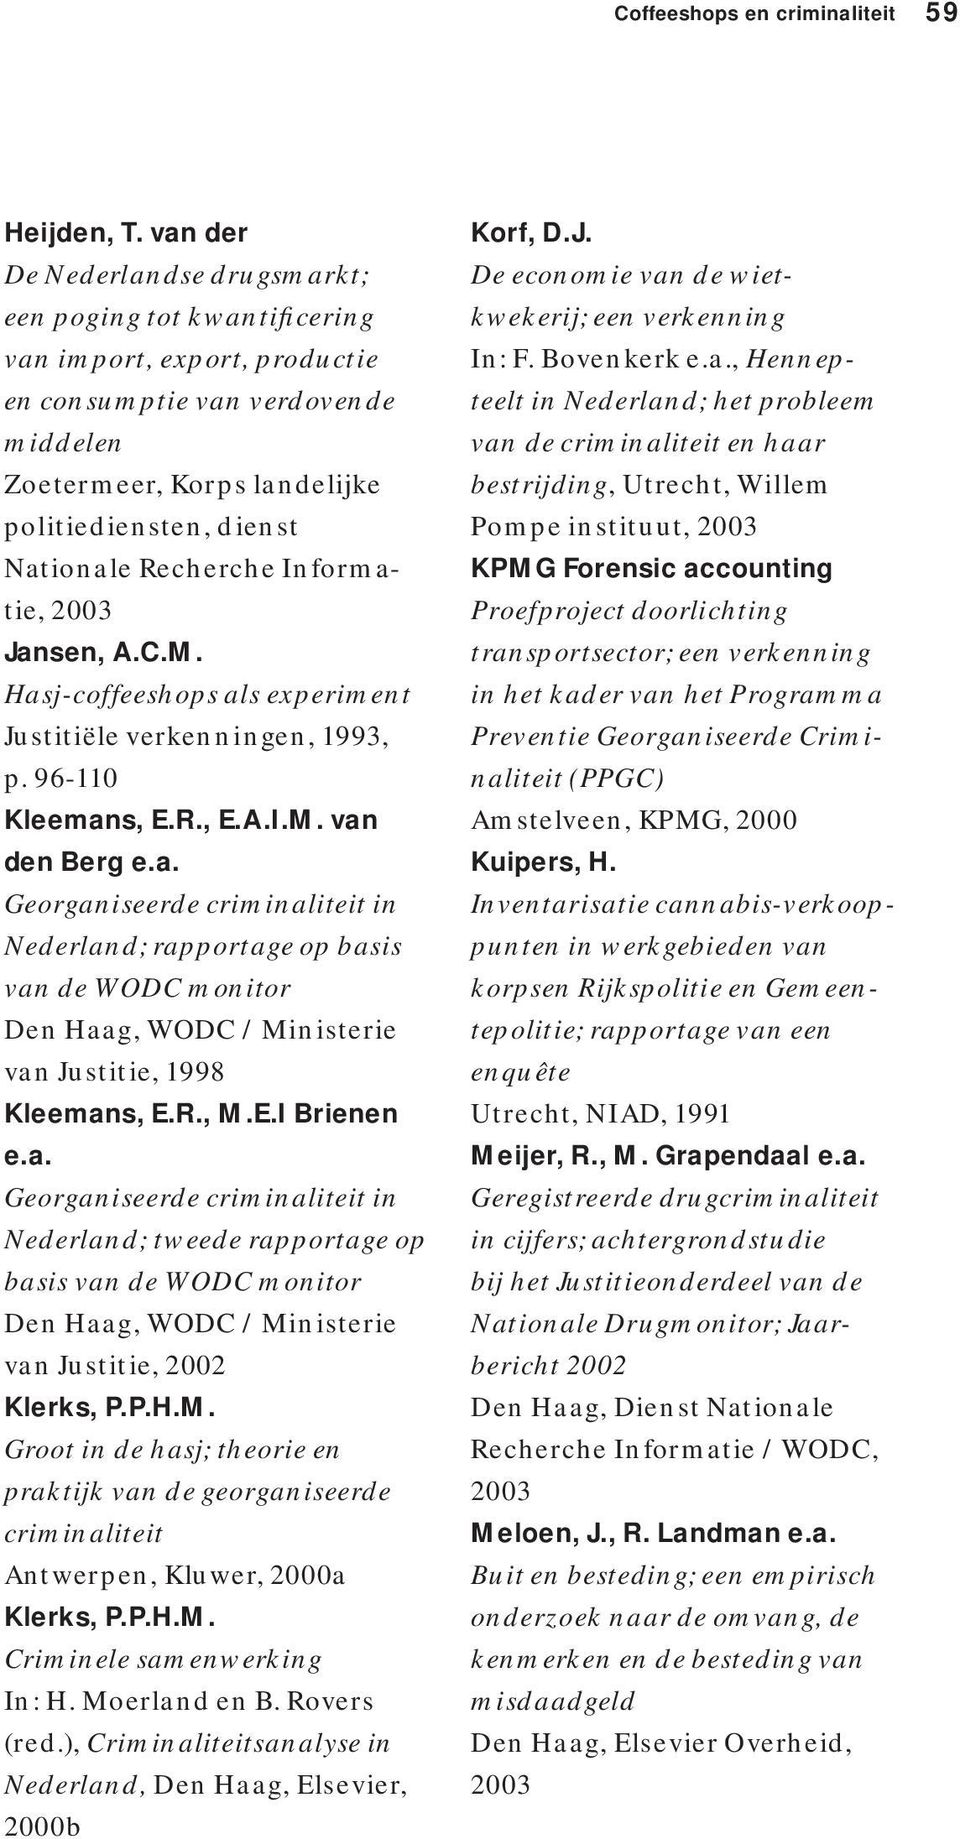 Recherche Informatie, 2003 Jansen, A.C.M. Hasj-coffeeshops als experiment Justitiële verkenningen, 1993, p. 96-110 Kleemans, E.R., E.A.I.M. van den Berg e.a. Georganiseerde criminaliteit in Nederland; rapportage op basis van de WODC monitor Den Haag, WODC / Ministerie van Justitie, 1998 Kleemans, E.